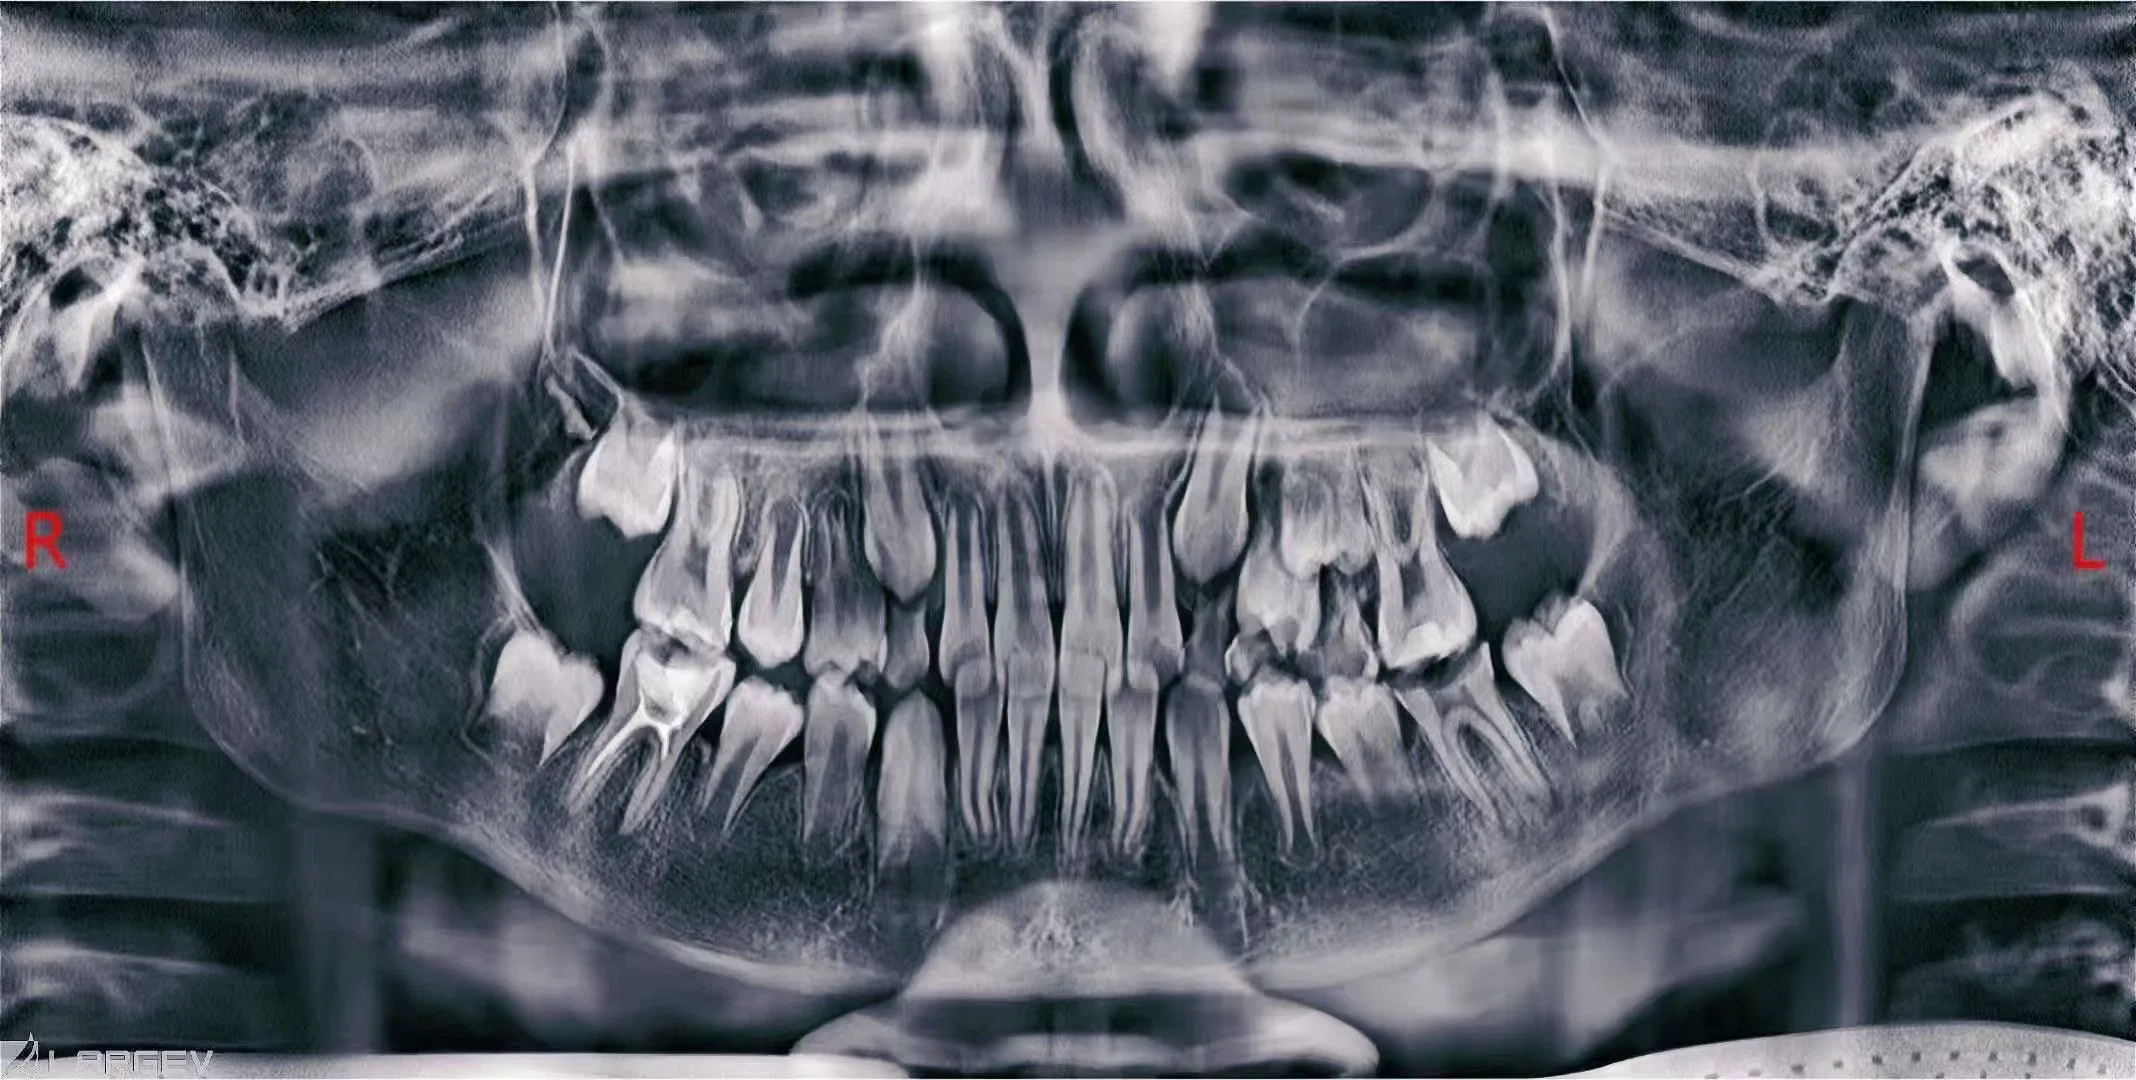 Smart 3D 2D больница клиника Dental Cbct Cephalometric цифровой панорамный рентгеновский аппарат для лечения с использованием Maxillofacial сертификат CE